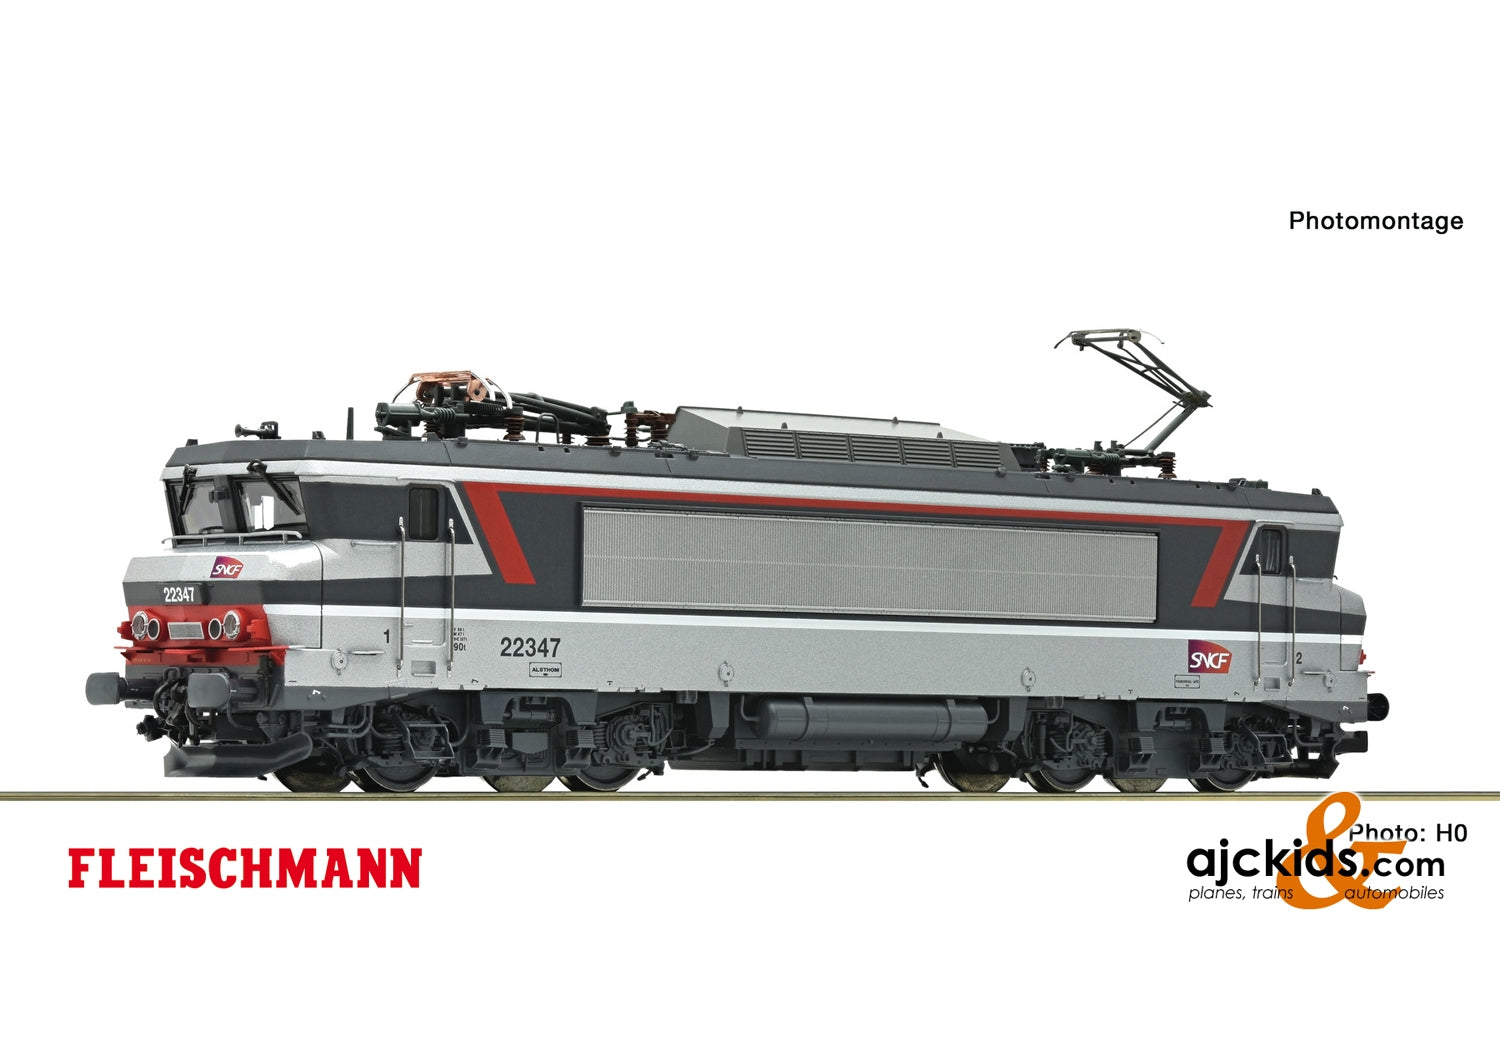 Fleischmann 732136 - Electric locomotive BB 22347